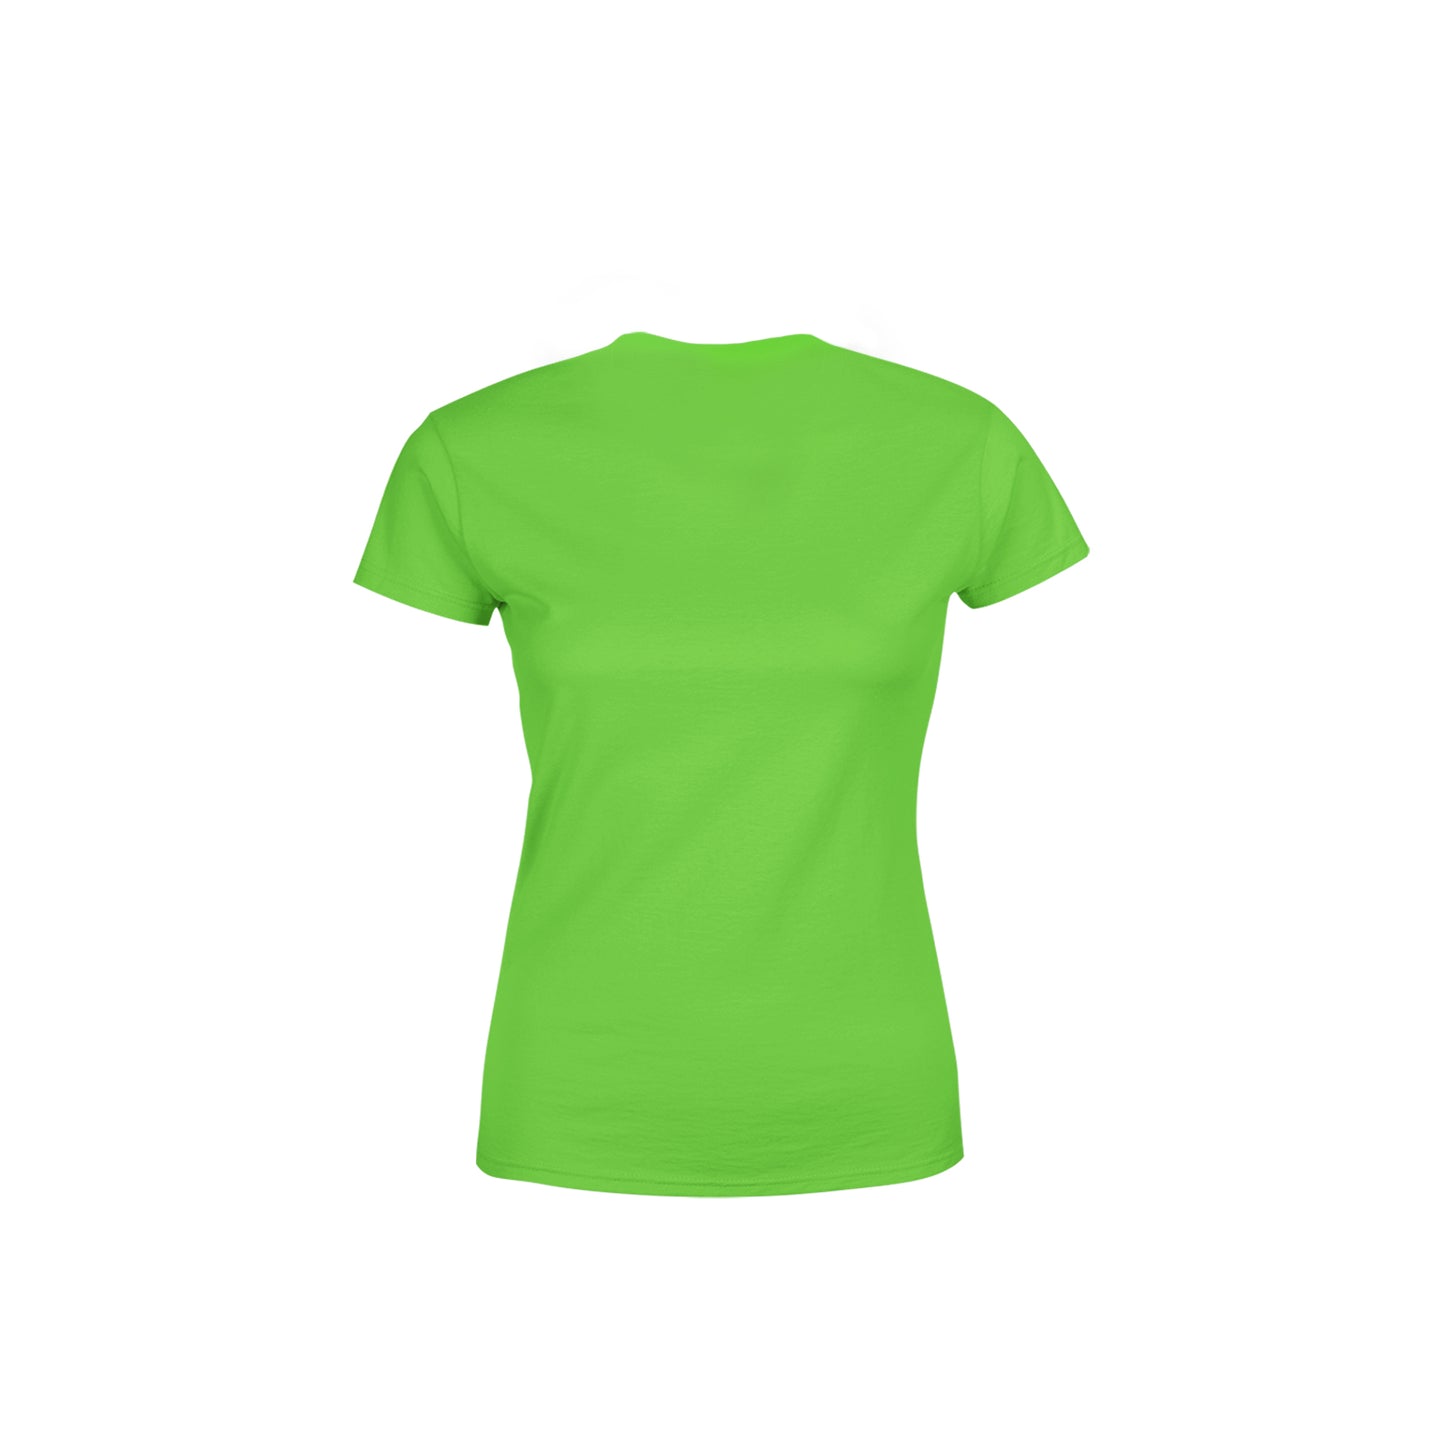 21 Number Women's T-Shirt (Liril Green)